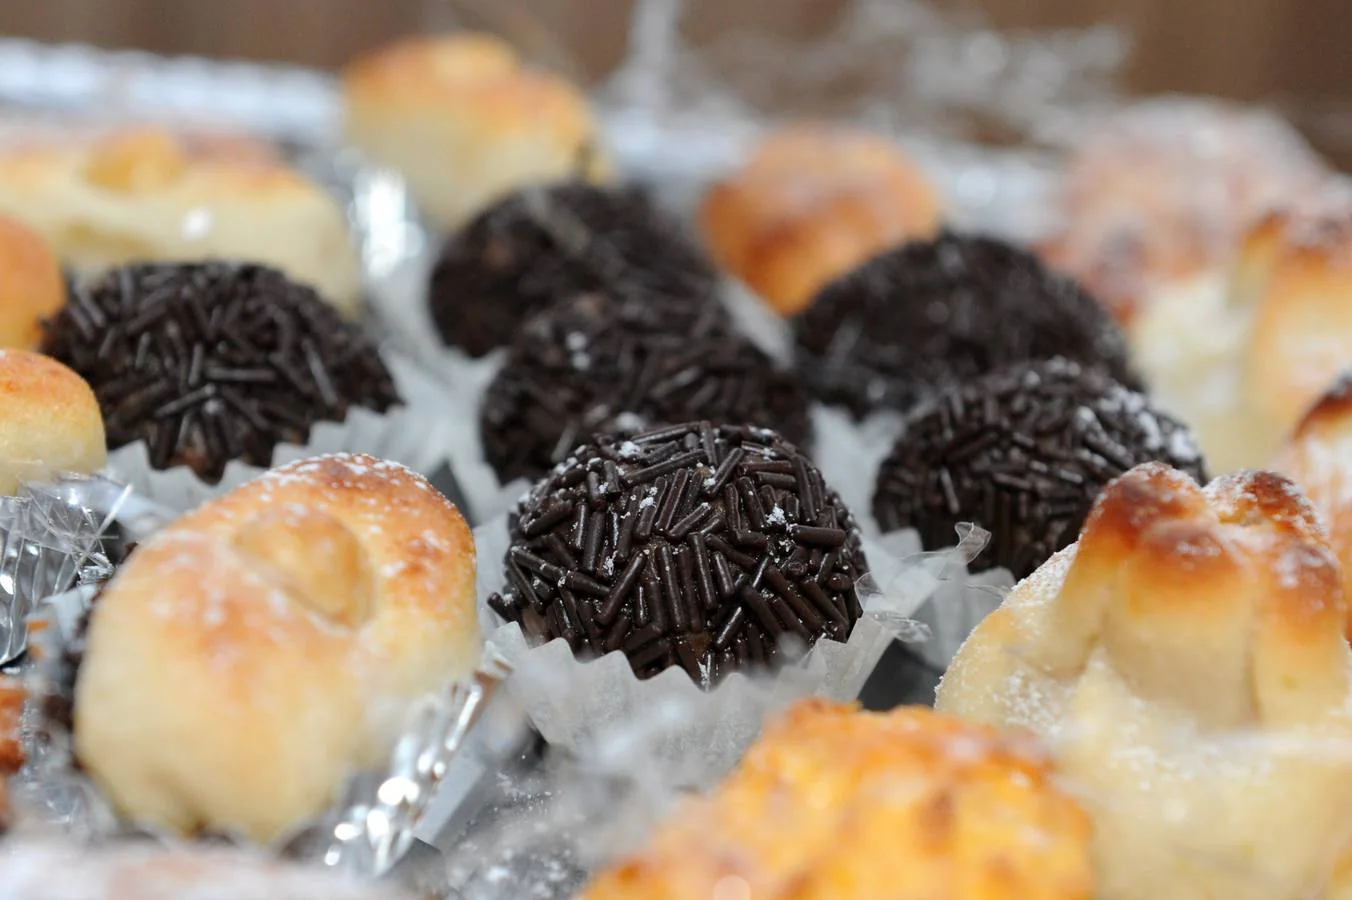 Las delicias que se podrán encontrar en la exposición de dulces de conventos